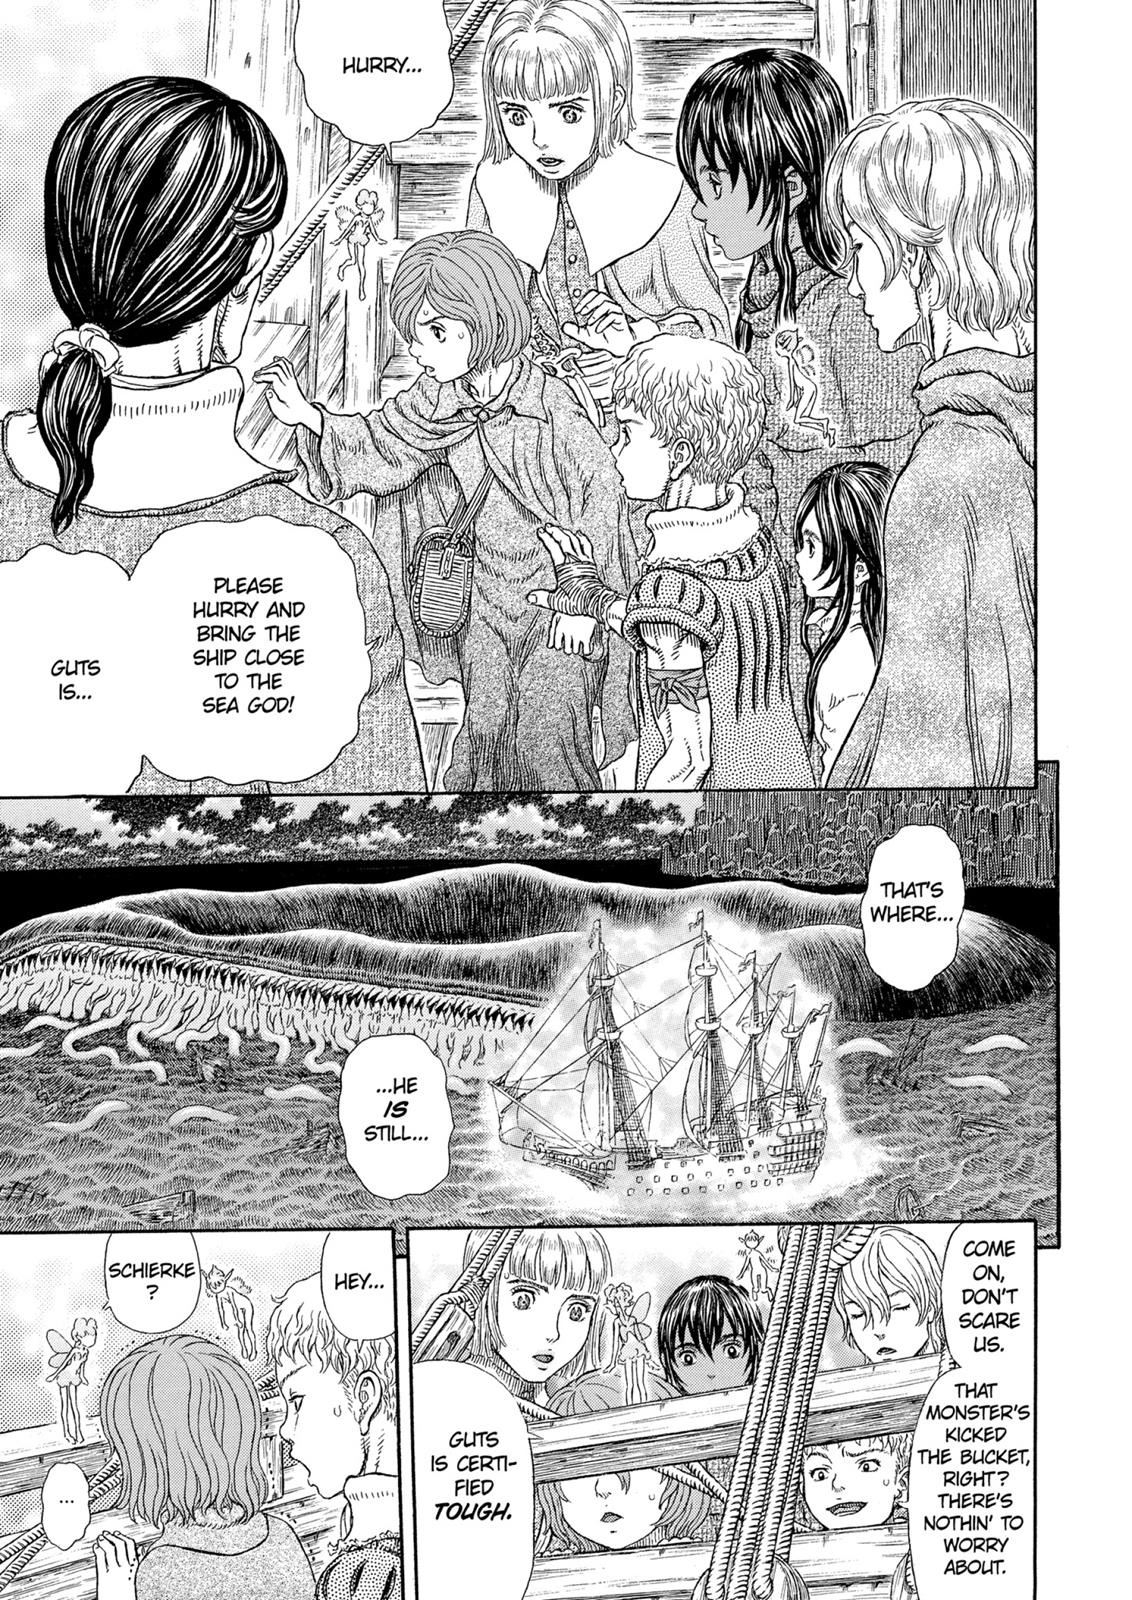 Berserk Manga Chapter 327 image 02